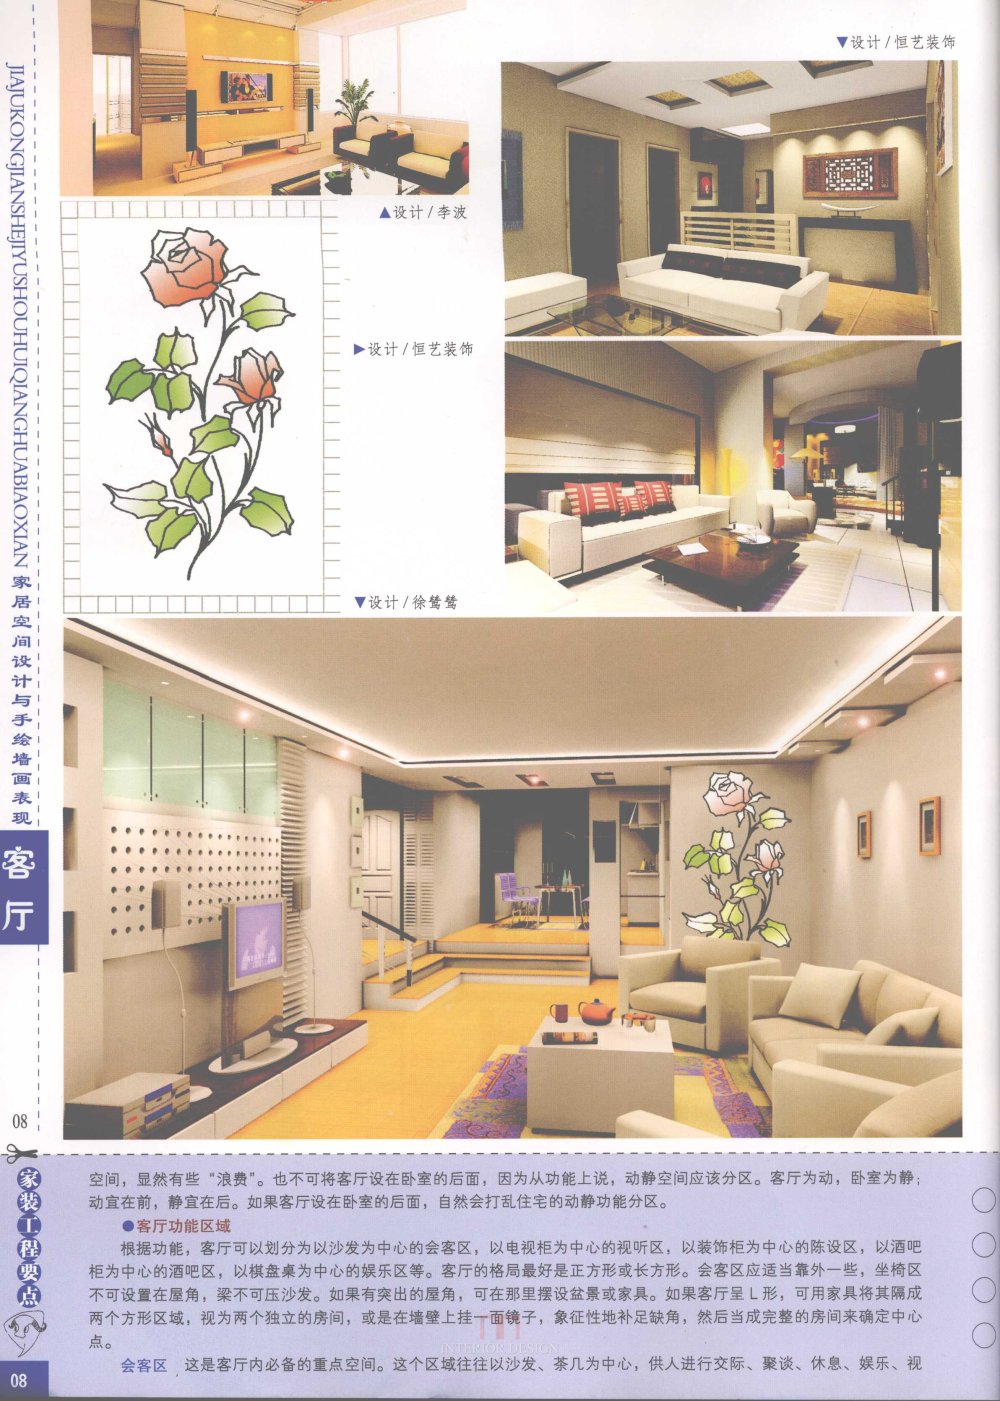 家居空间设计与手绘墙画表现客厅_家居空间设计与手绘墙画表现客厅-10.jpg